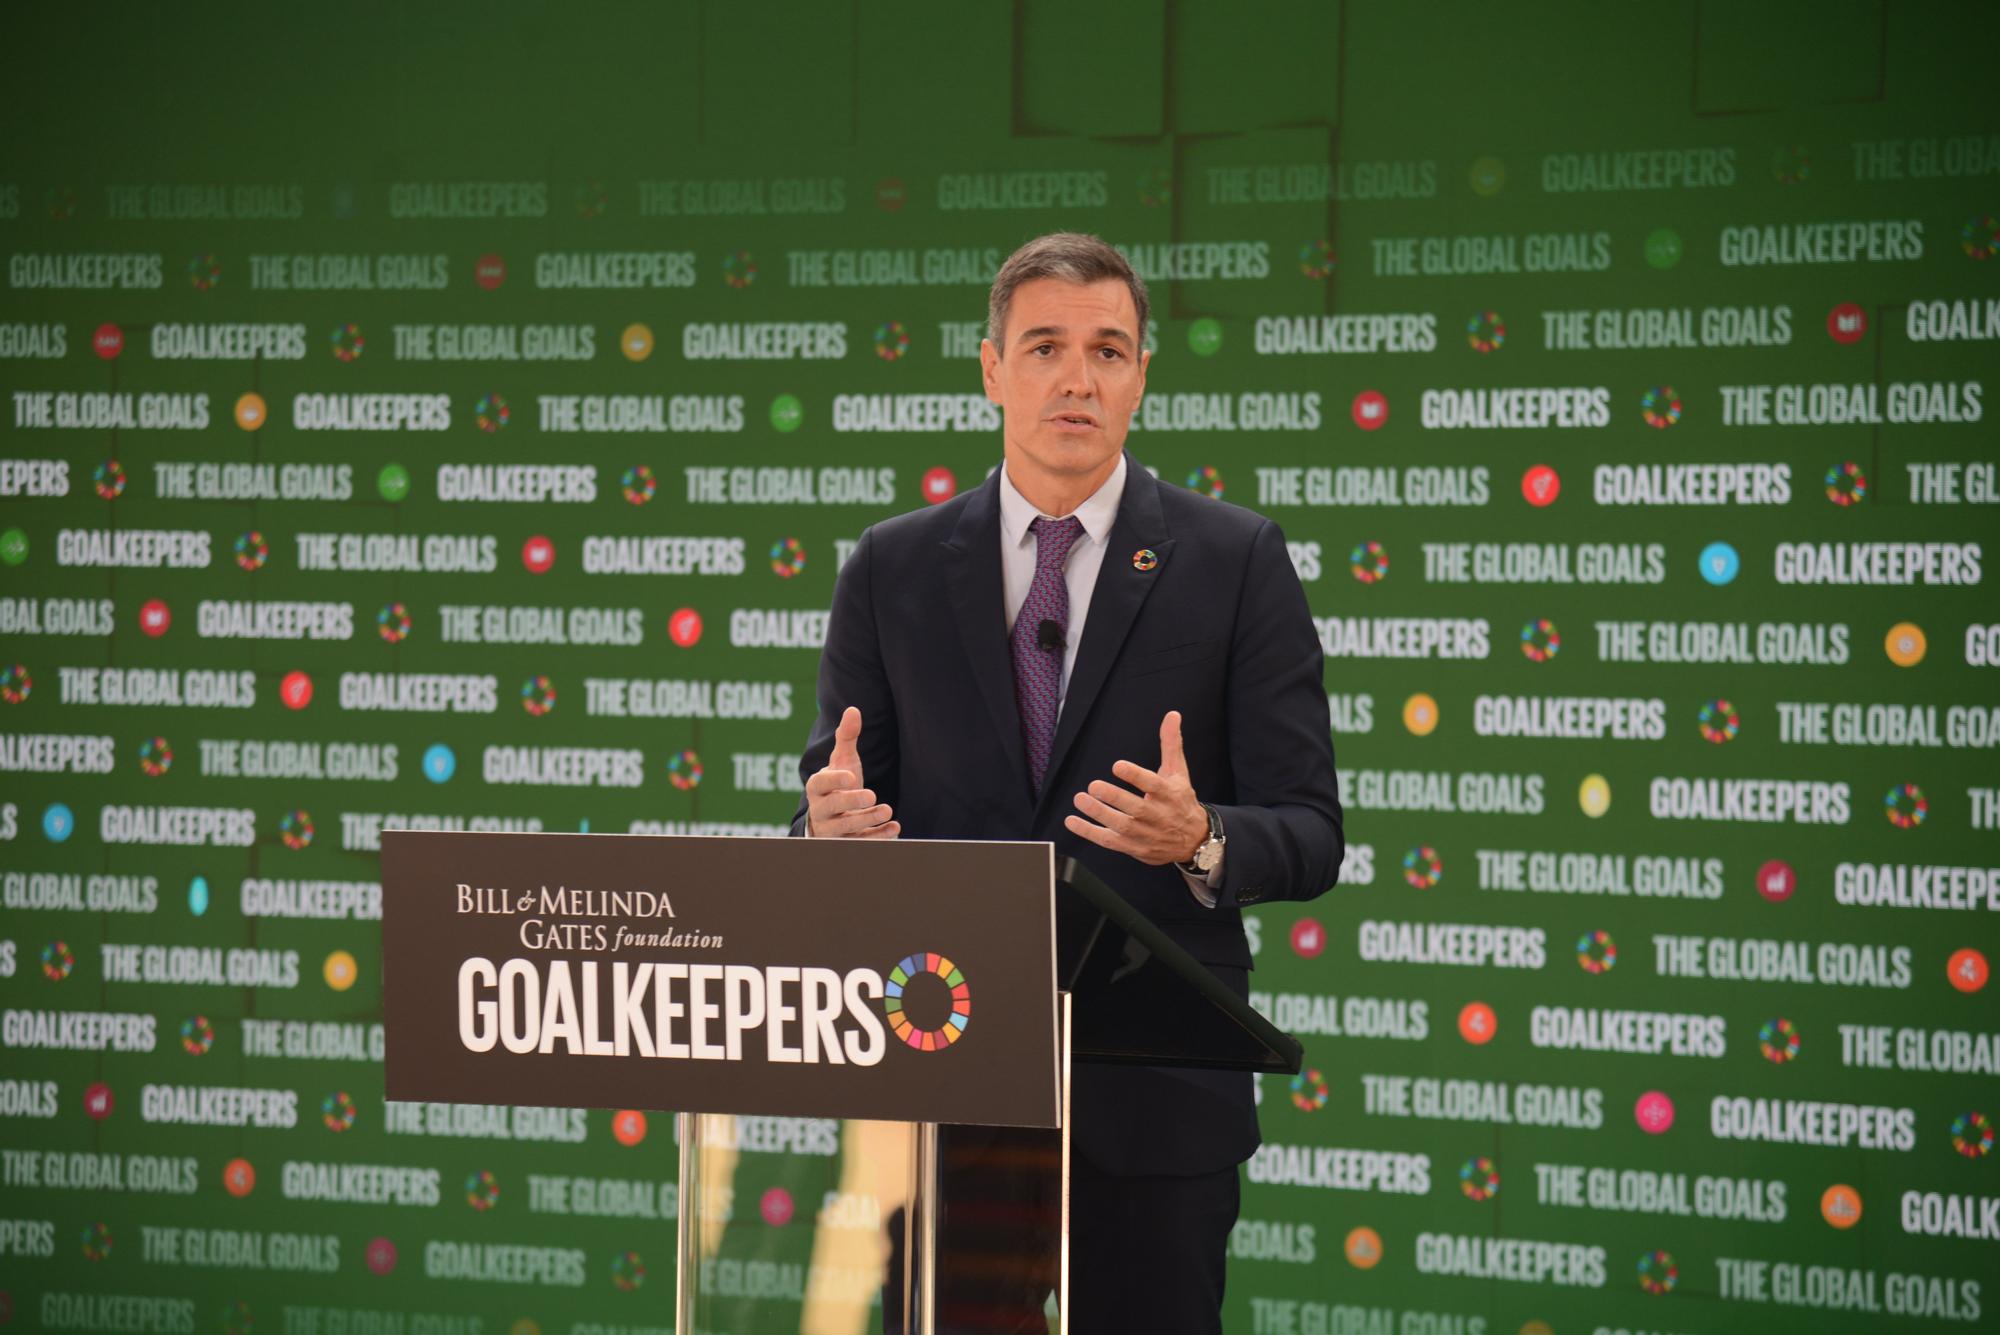 El presidente del Gobierno, Pedro Sánchez, interviene en el acto Goalkeepers de la Fundación Bill y Melinda Gates en Nueva York.